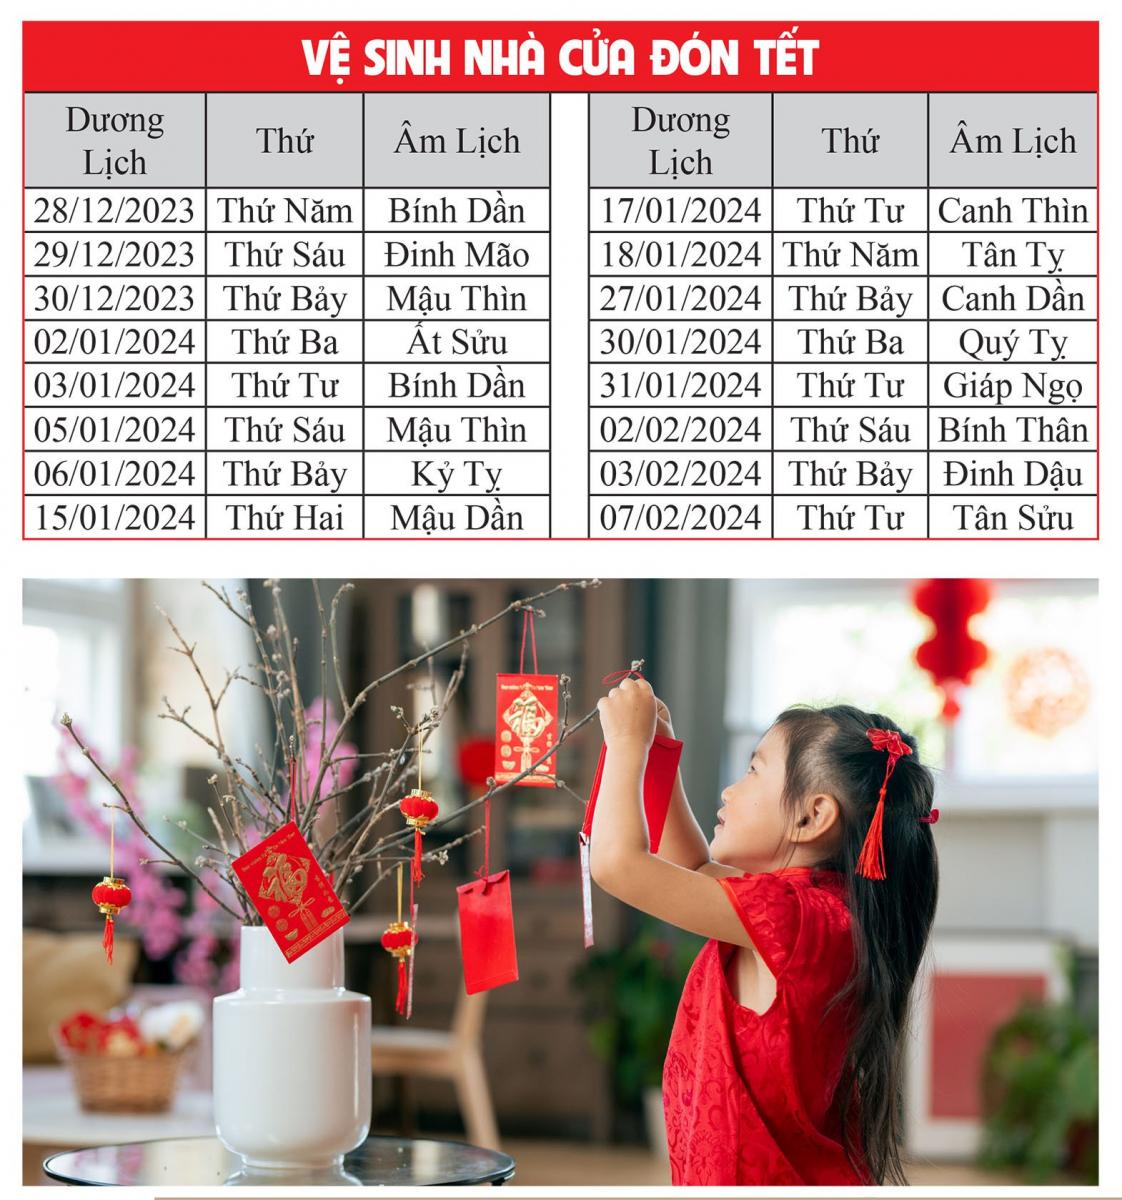 Cẩm Nang Phong Thủy Năm 2024 Giúp 12 Con Giáp Đón Bình An - May Mắn Suốt Năm Giáp Thìn